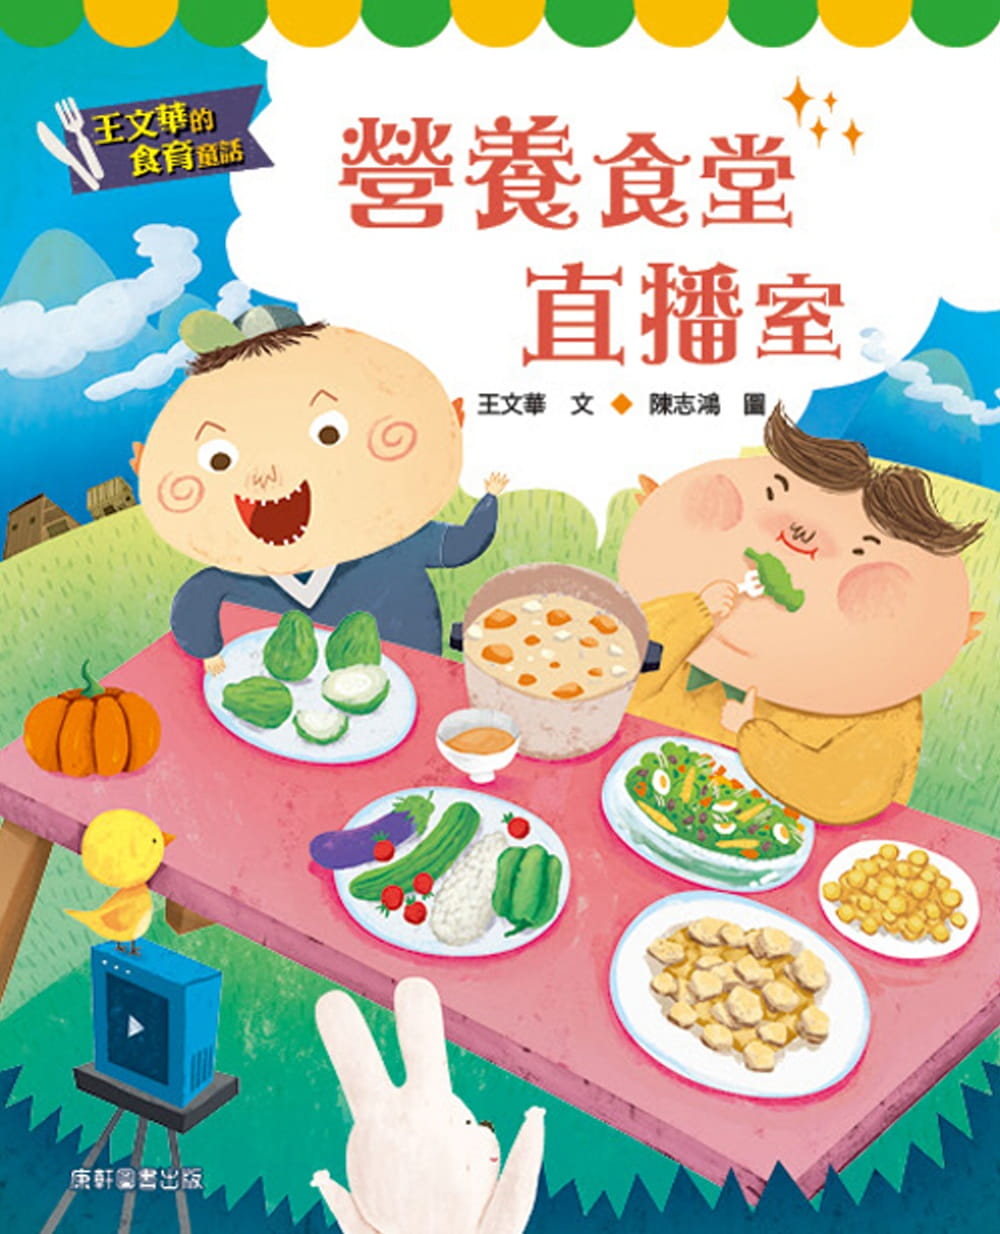 【现货】台版 王文华的食育童话 营养食堂直播室了解食物从哪来怎么吃如何挑选知识漫画学习趣味插画绘本书籍